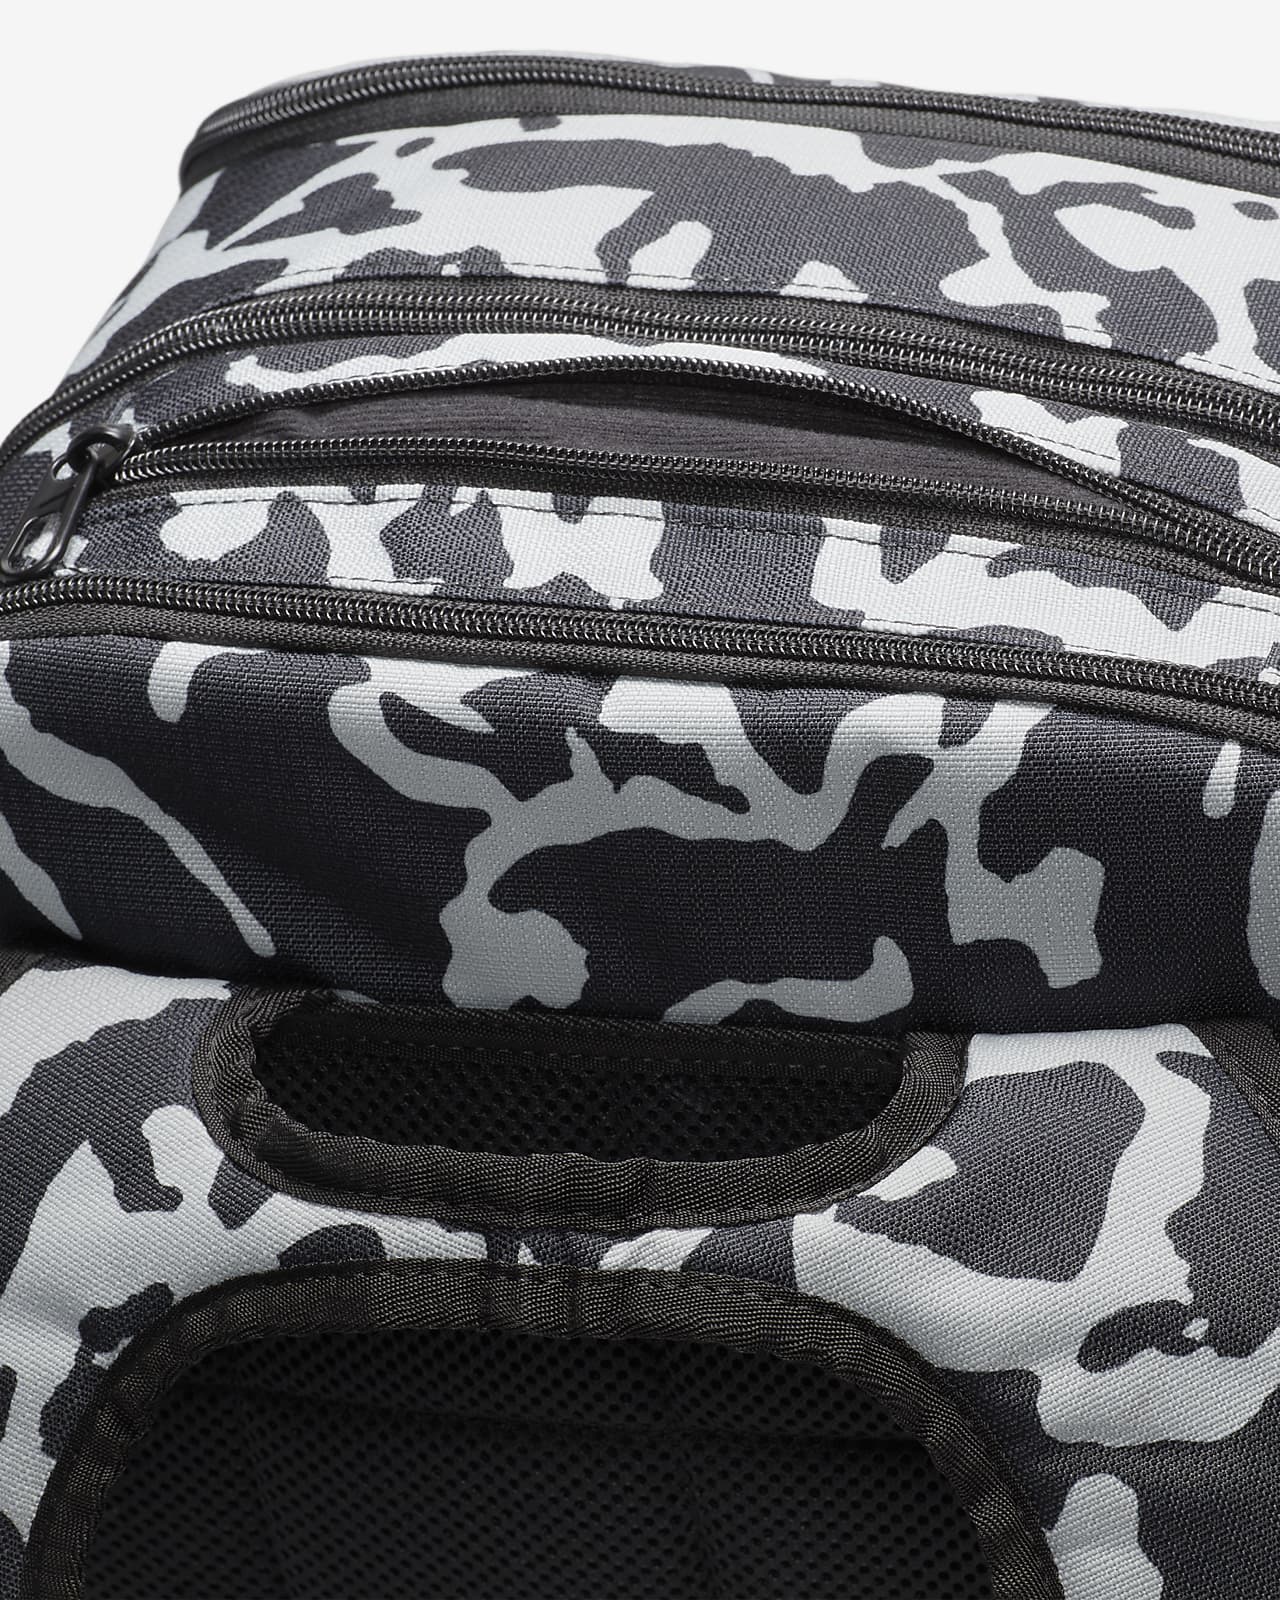 Nike 3 Brand Backpack - Black - One Size (30L)